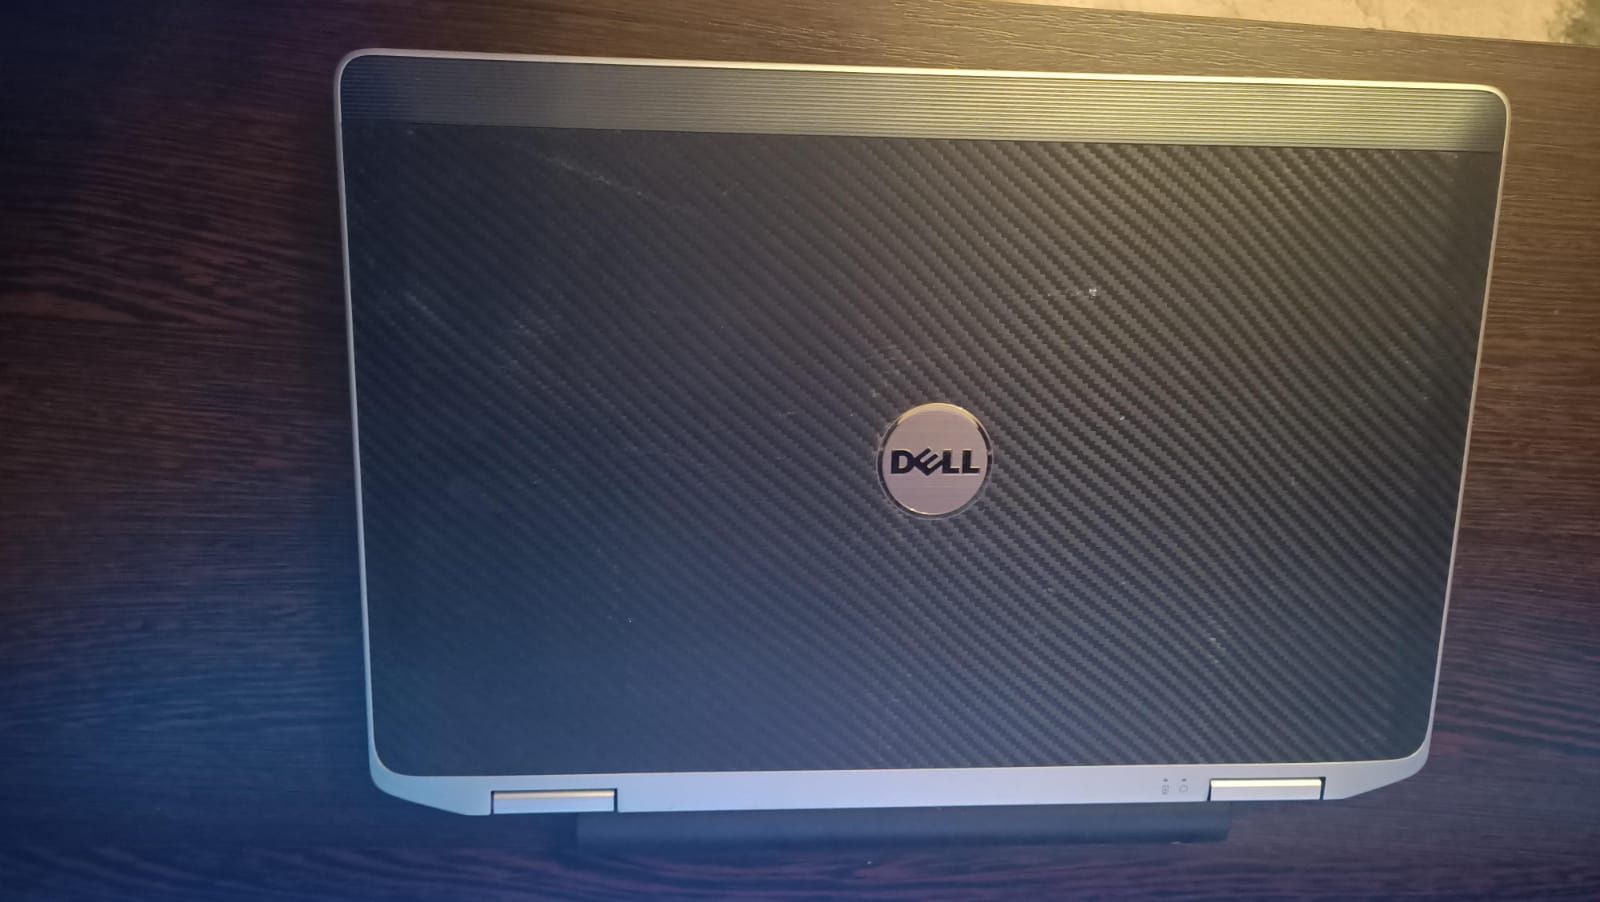 Ноутбук Dell latitude e6320